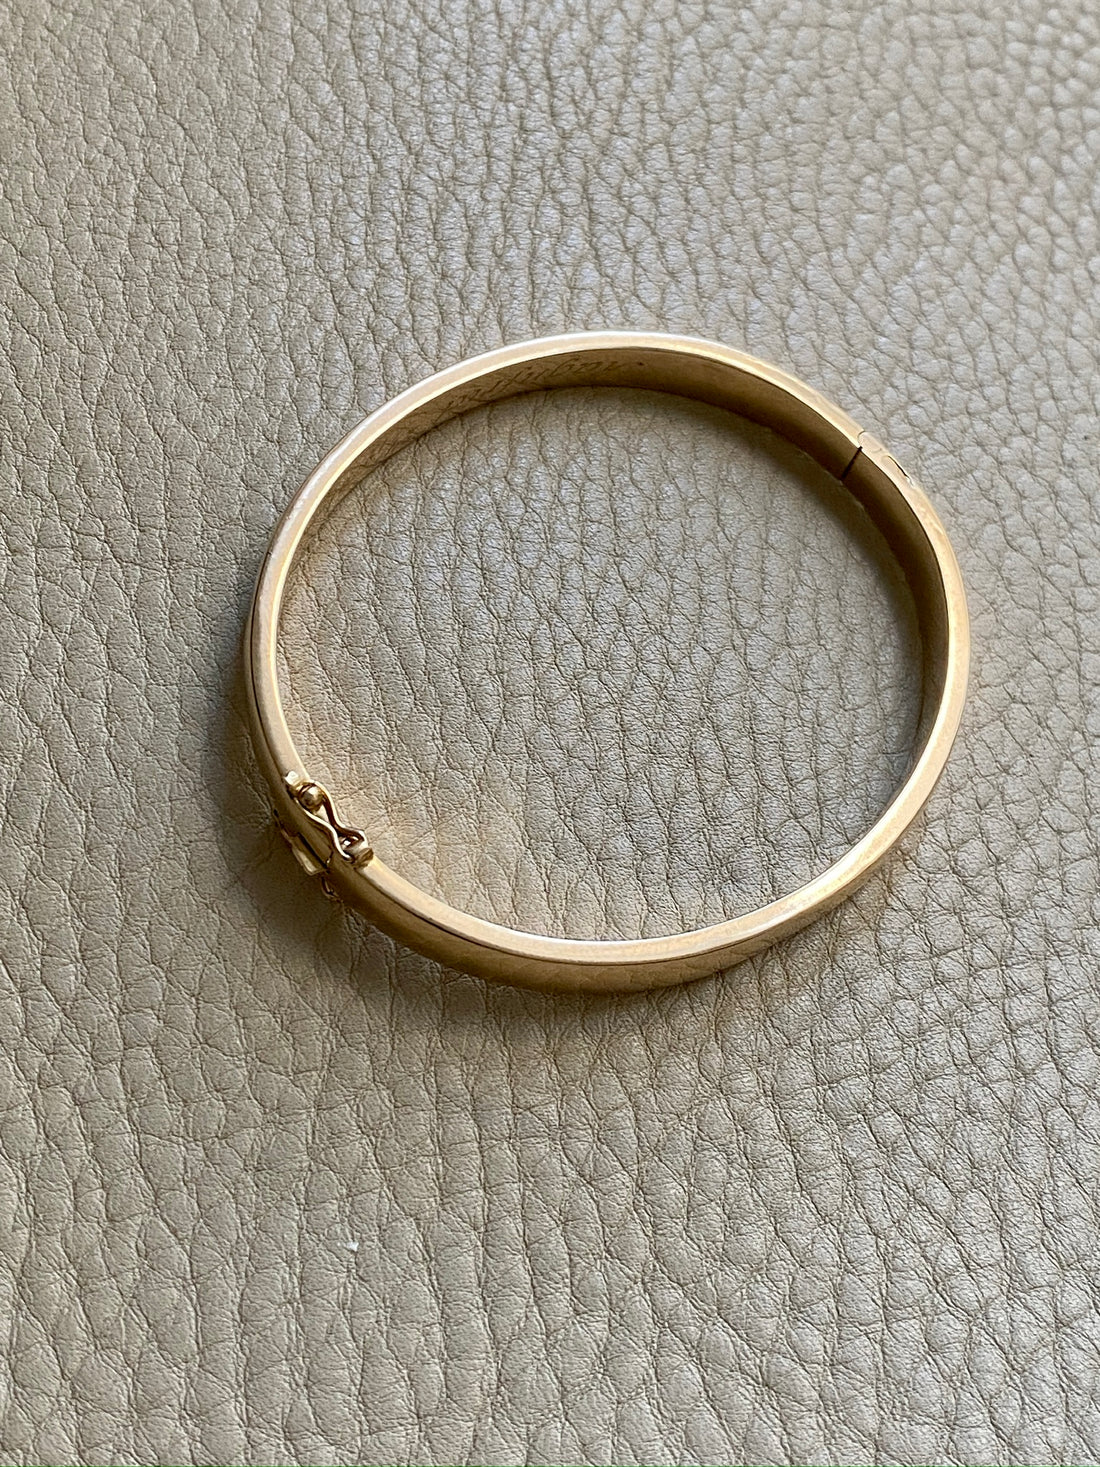 Midcentury era Scandinavian vintage 18k Gold hinged bangle